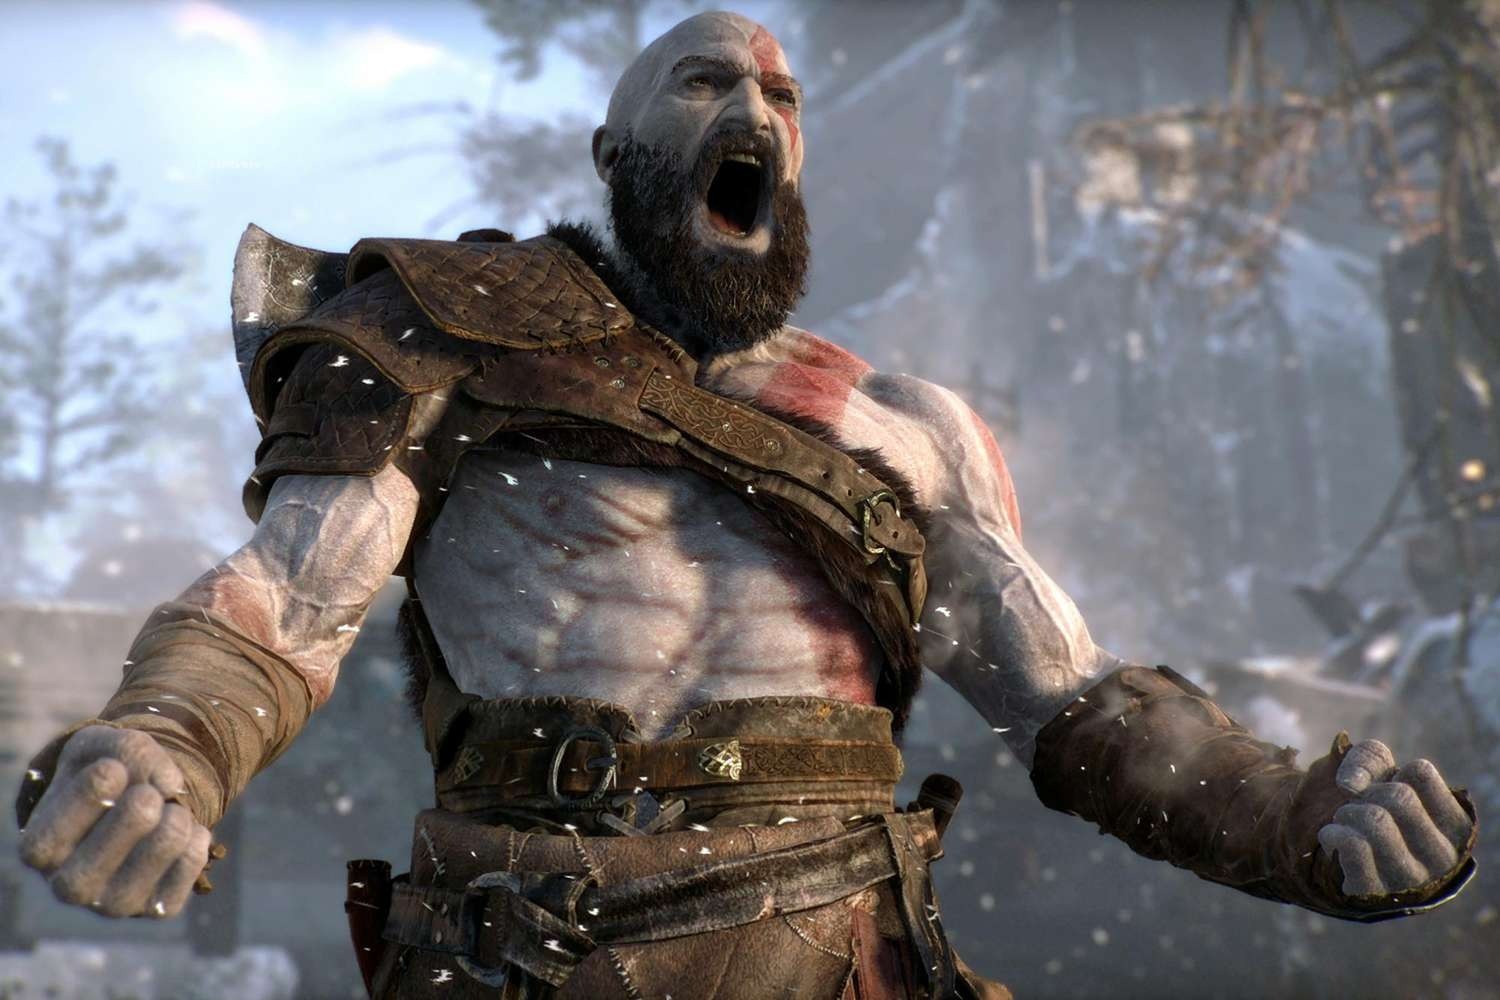 A still from God of War featuring Kratos